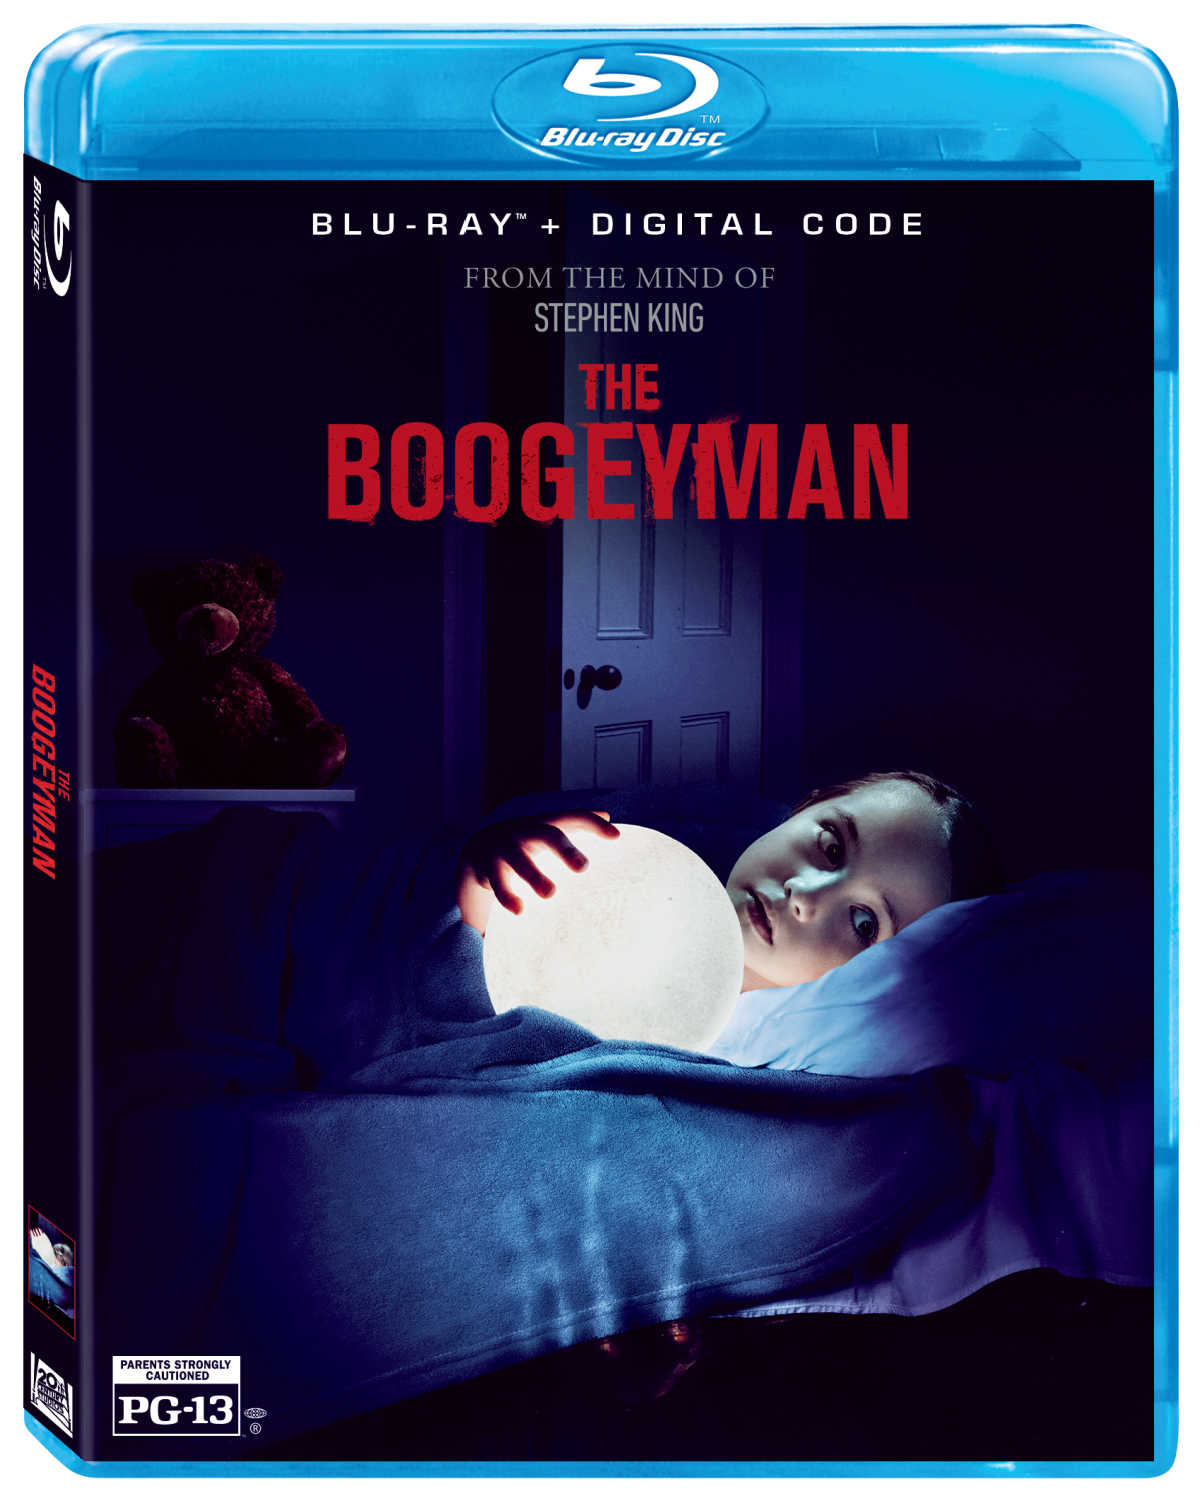 Blu-ray Digital The Boogeyman